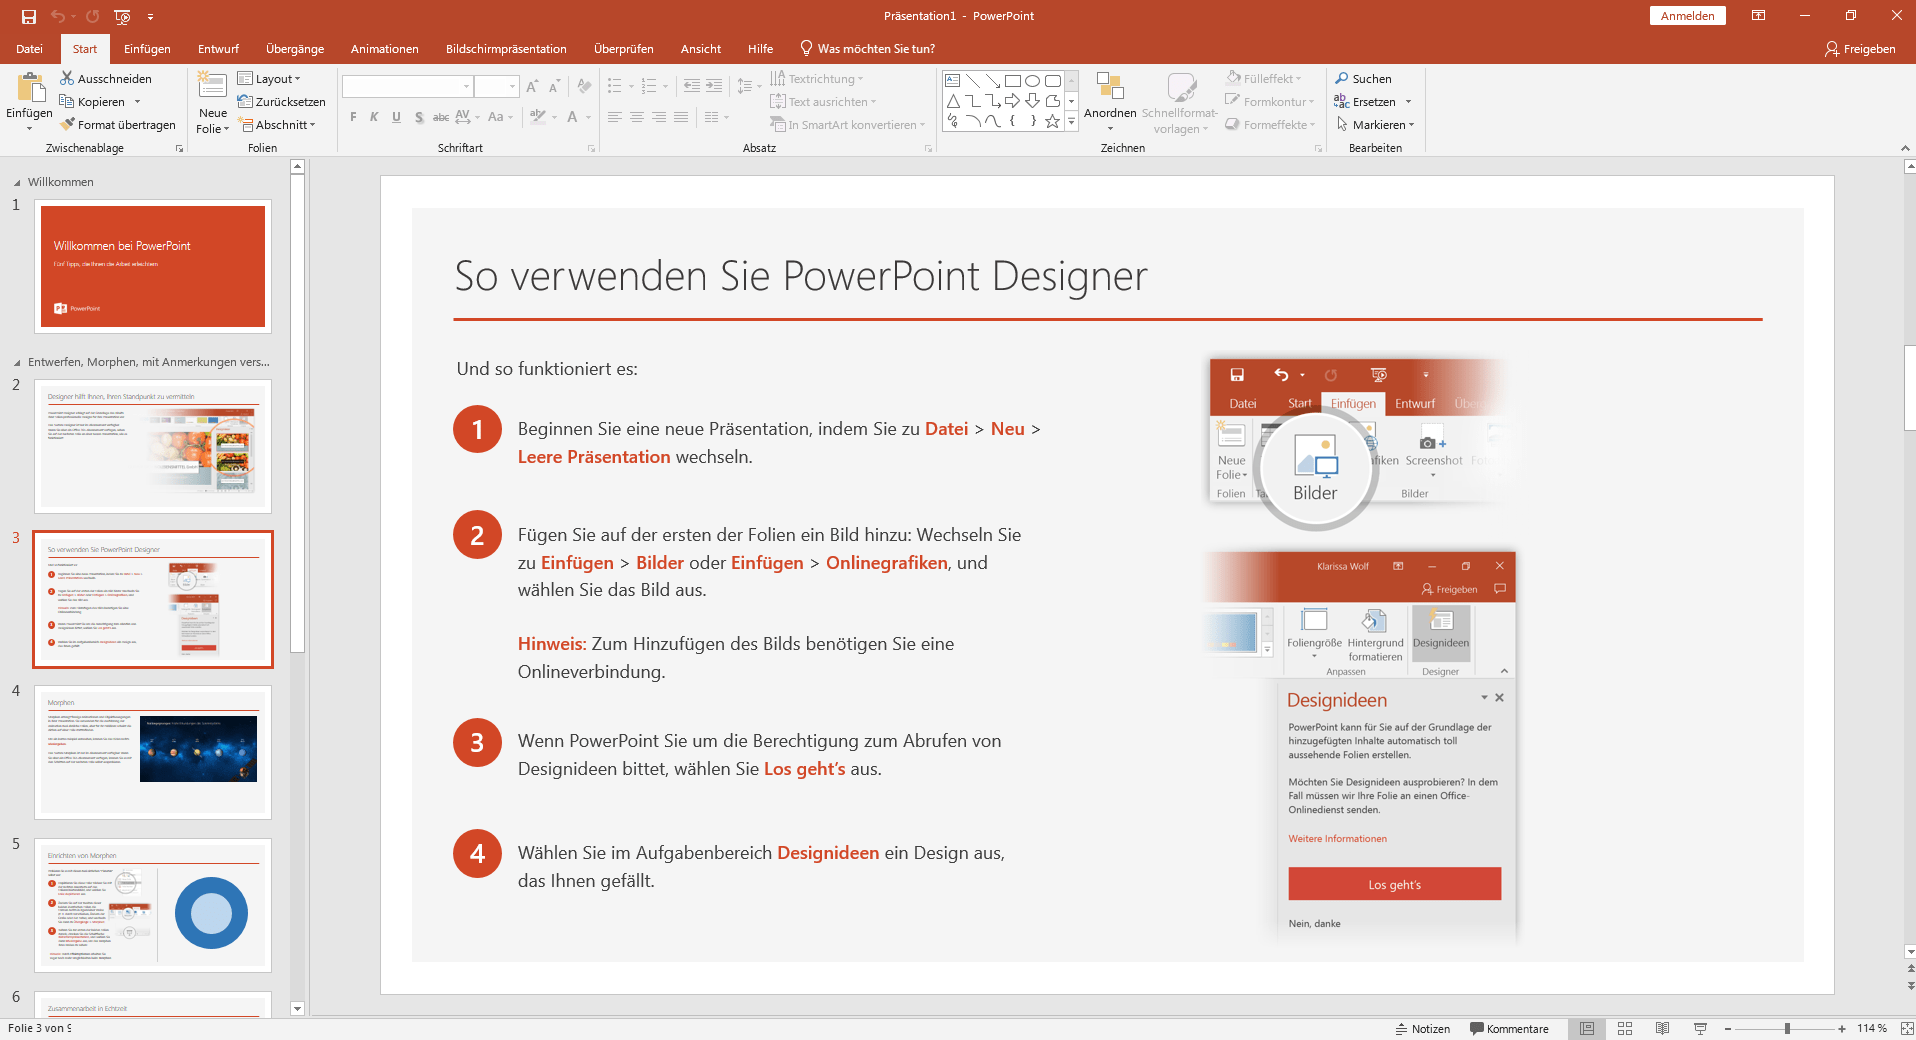 Microsoft PowerPoint 2019 Product Key günstig online kaufen